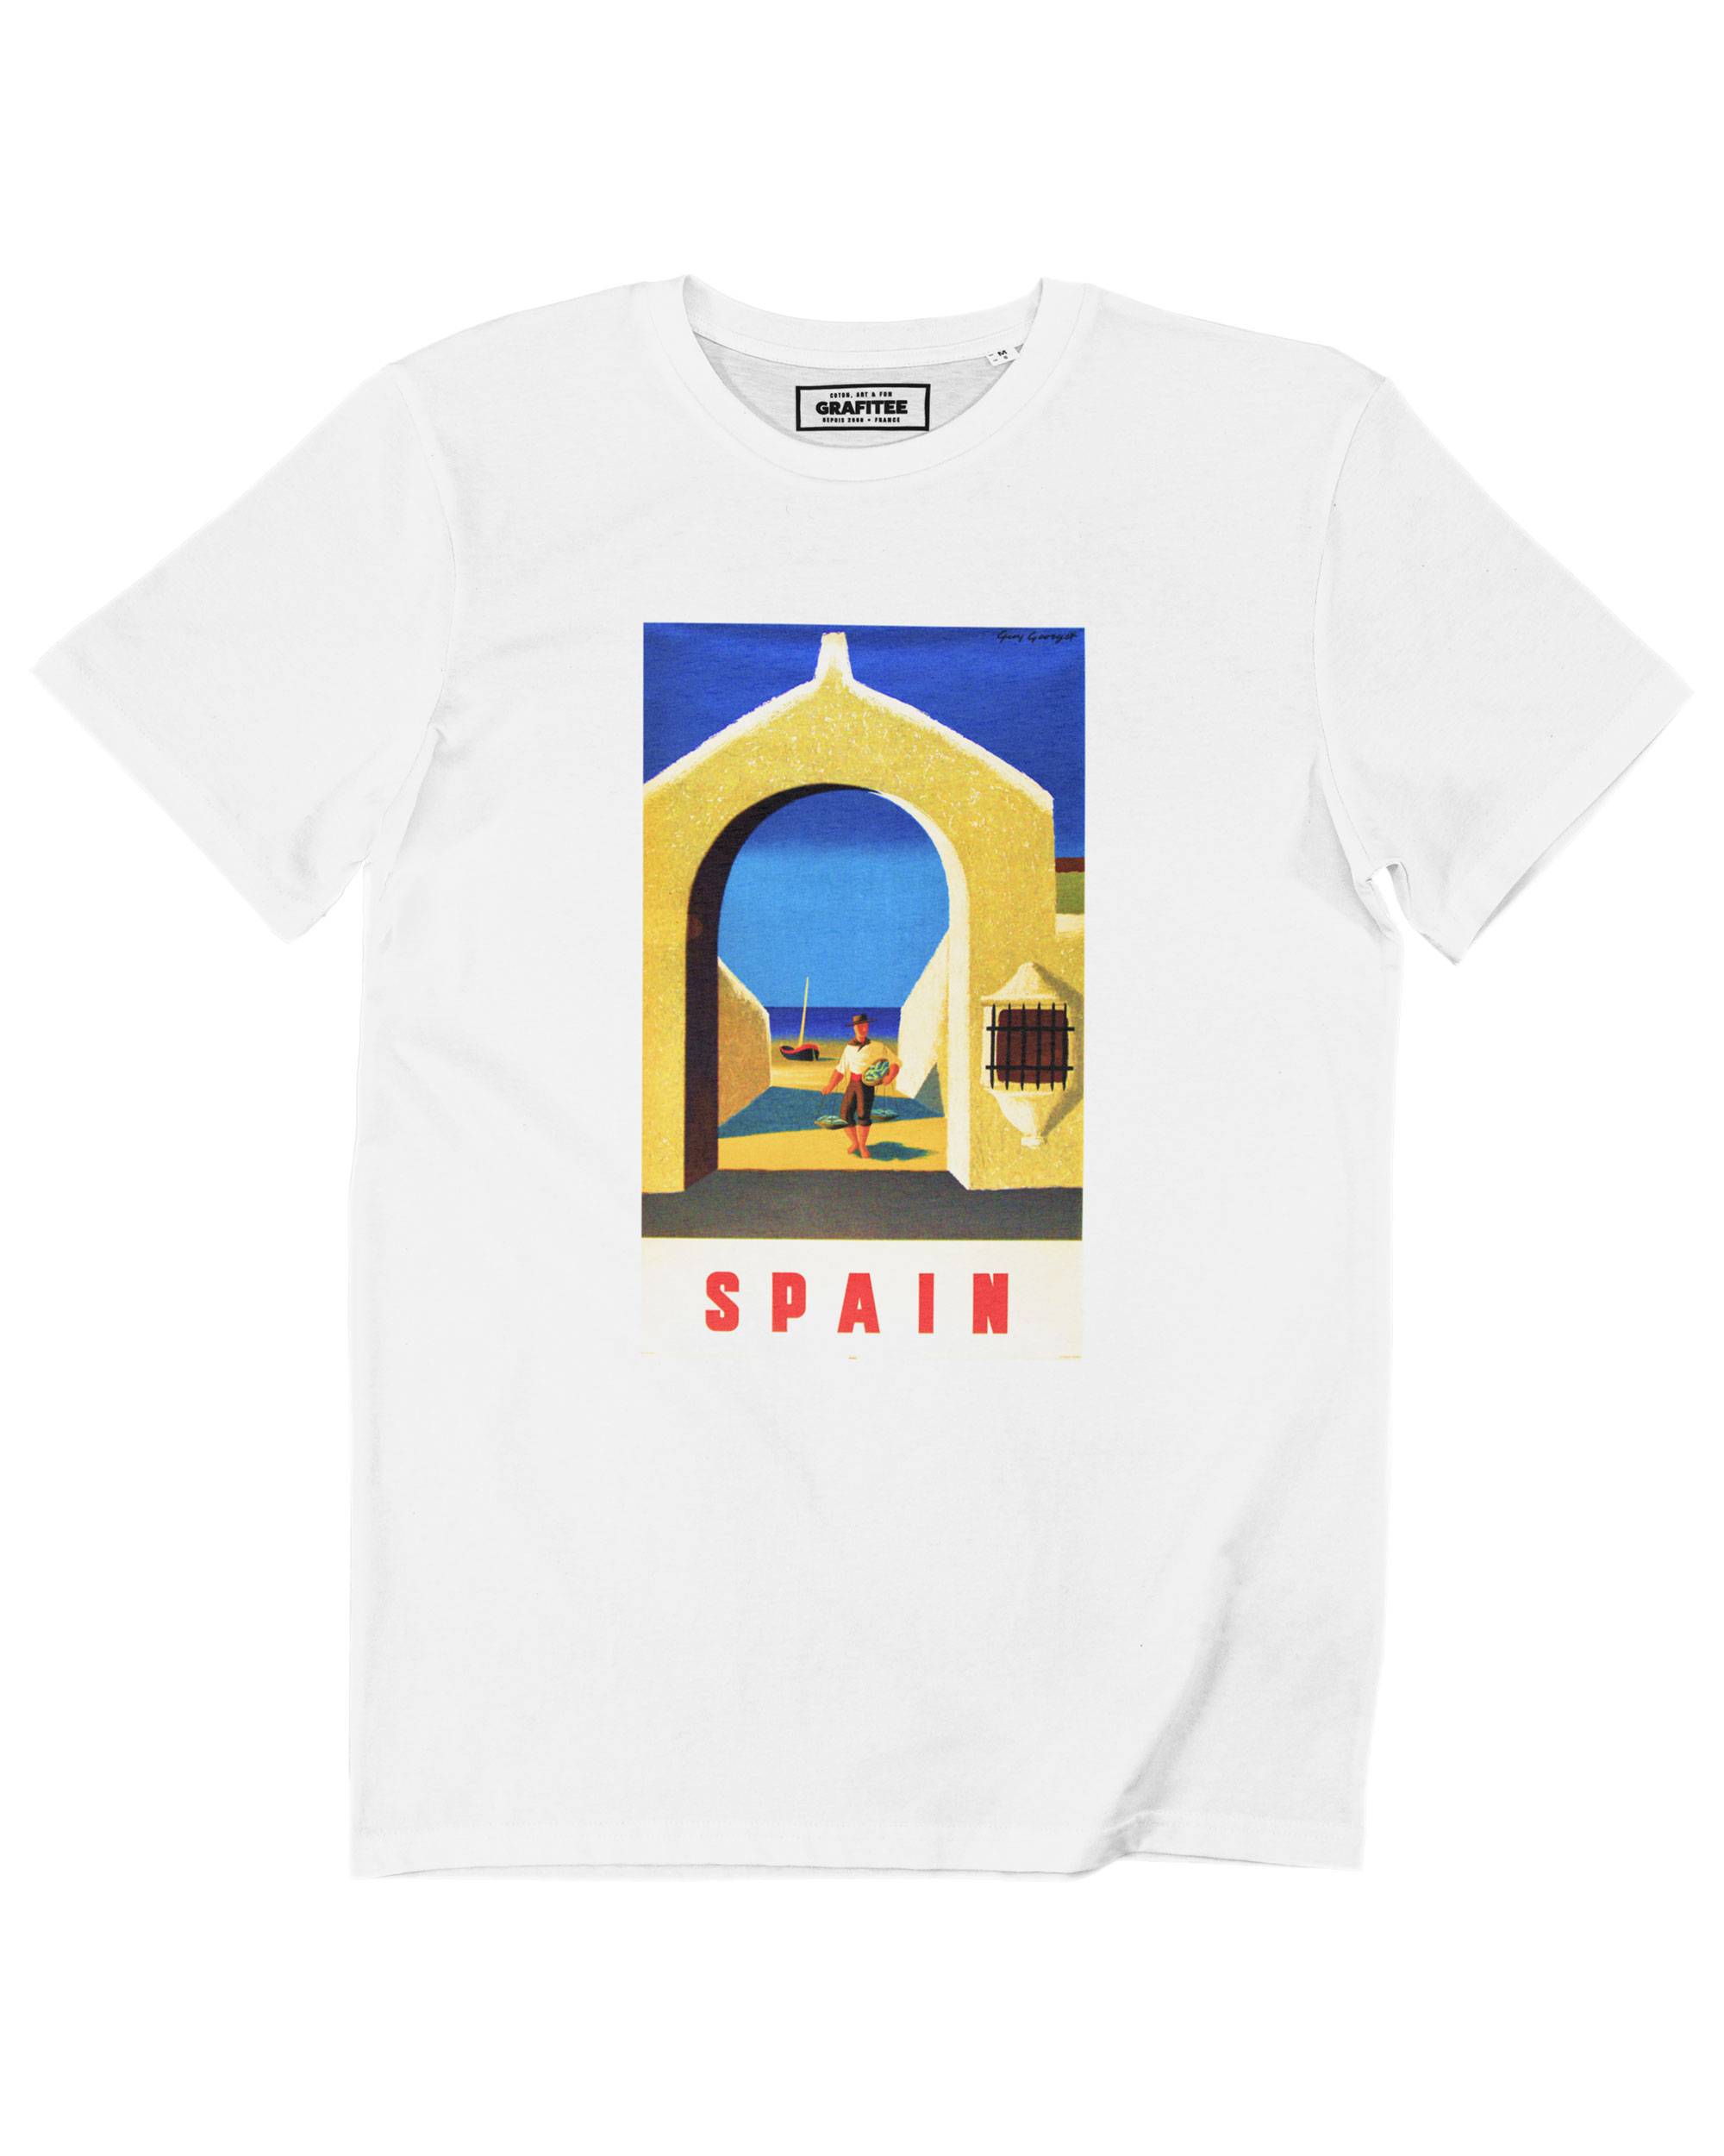 T-shirt Spain Grafitee